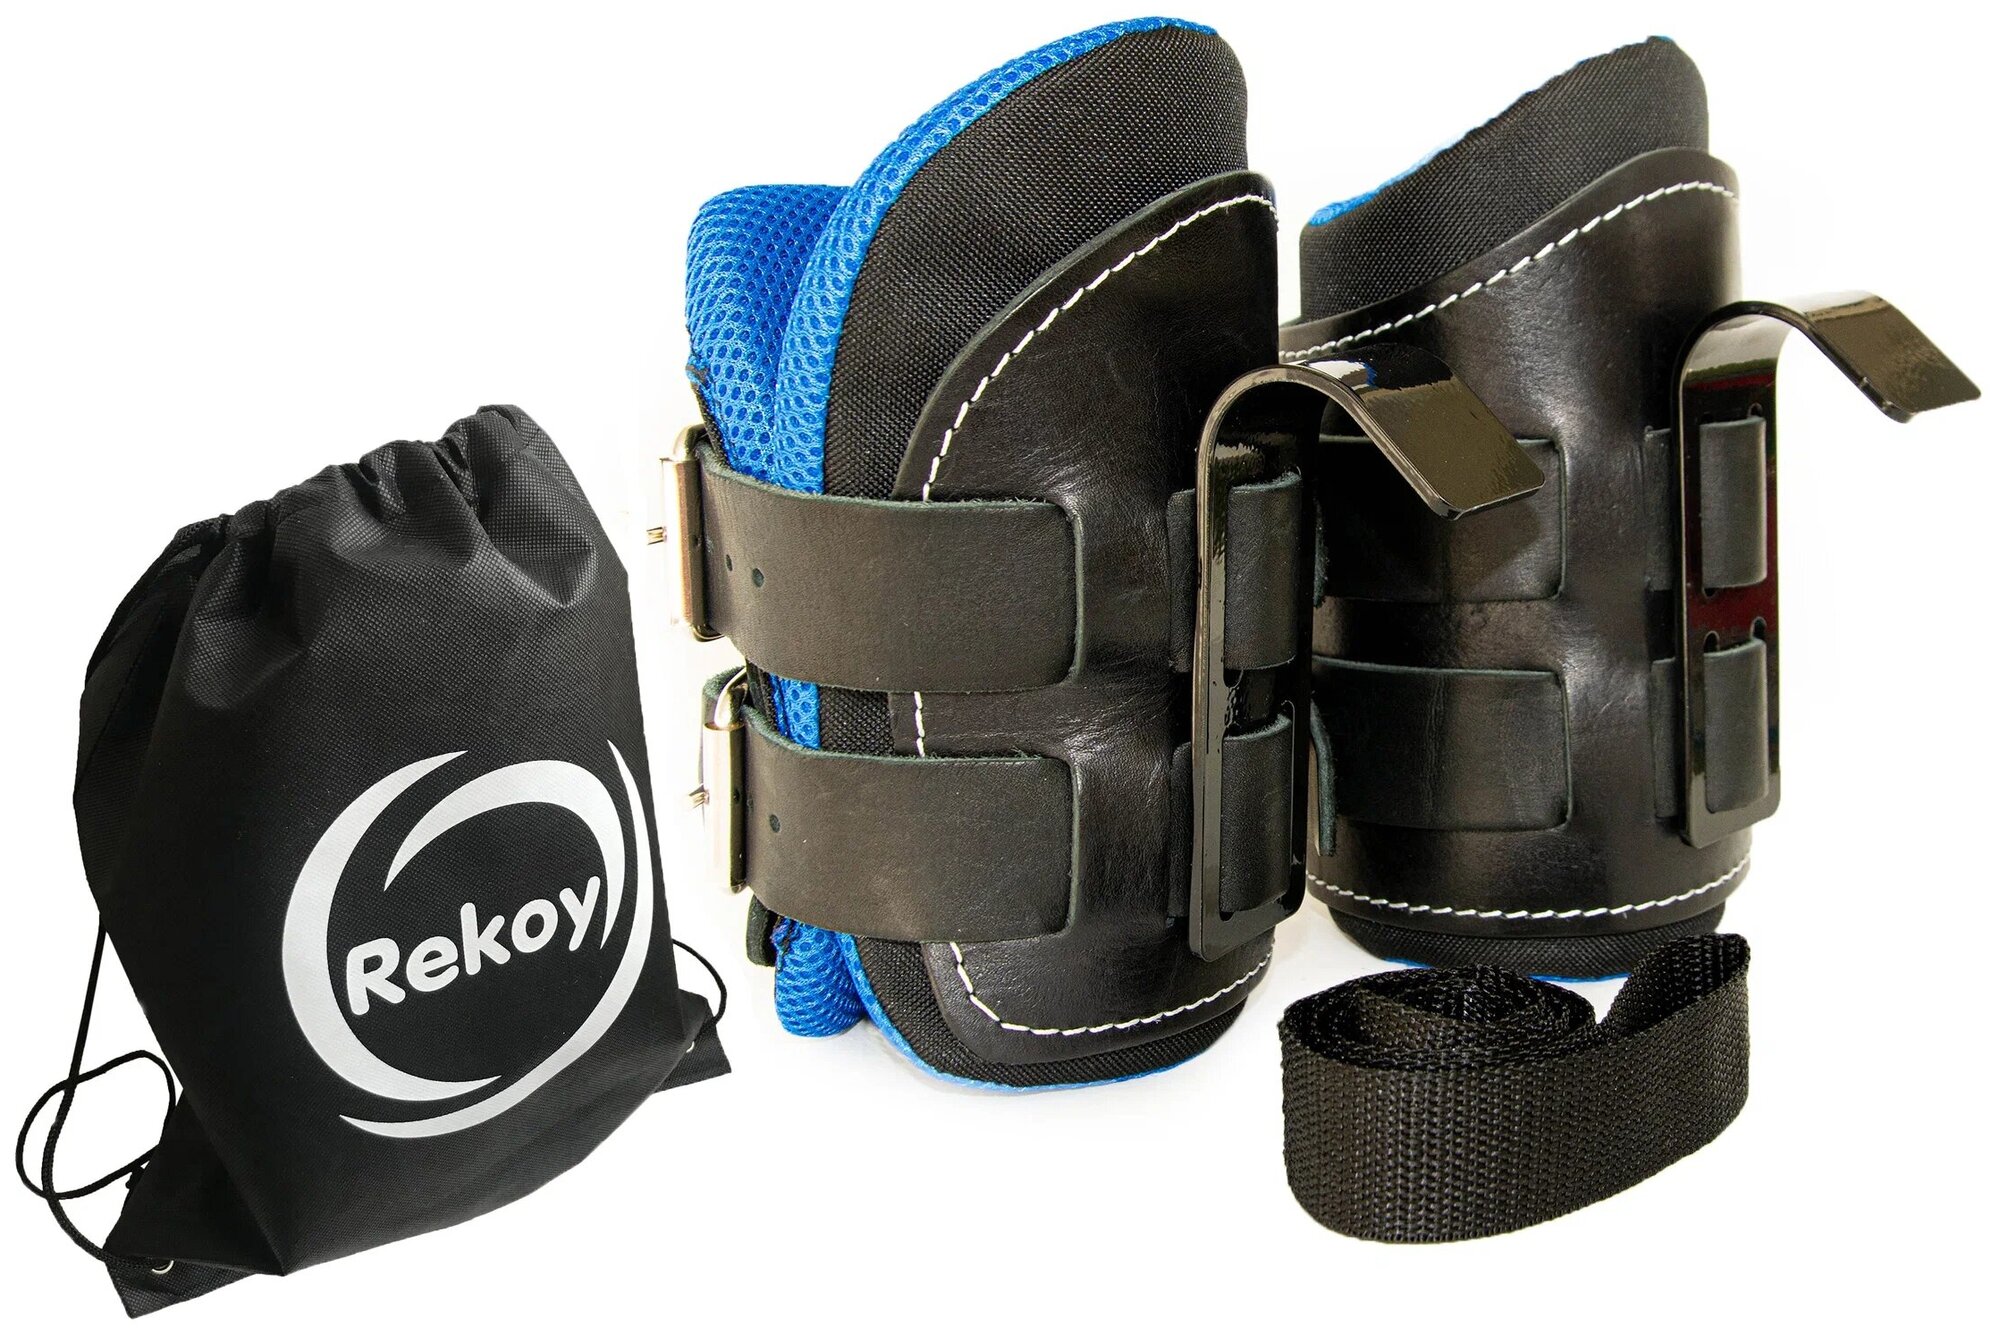 Ботинки гравитационные (инверсионные) кожаные с MicroFiber-подкладкой ReKoy FG19B, лямка страховочная, рюкзак на шнурках